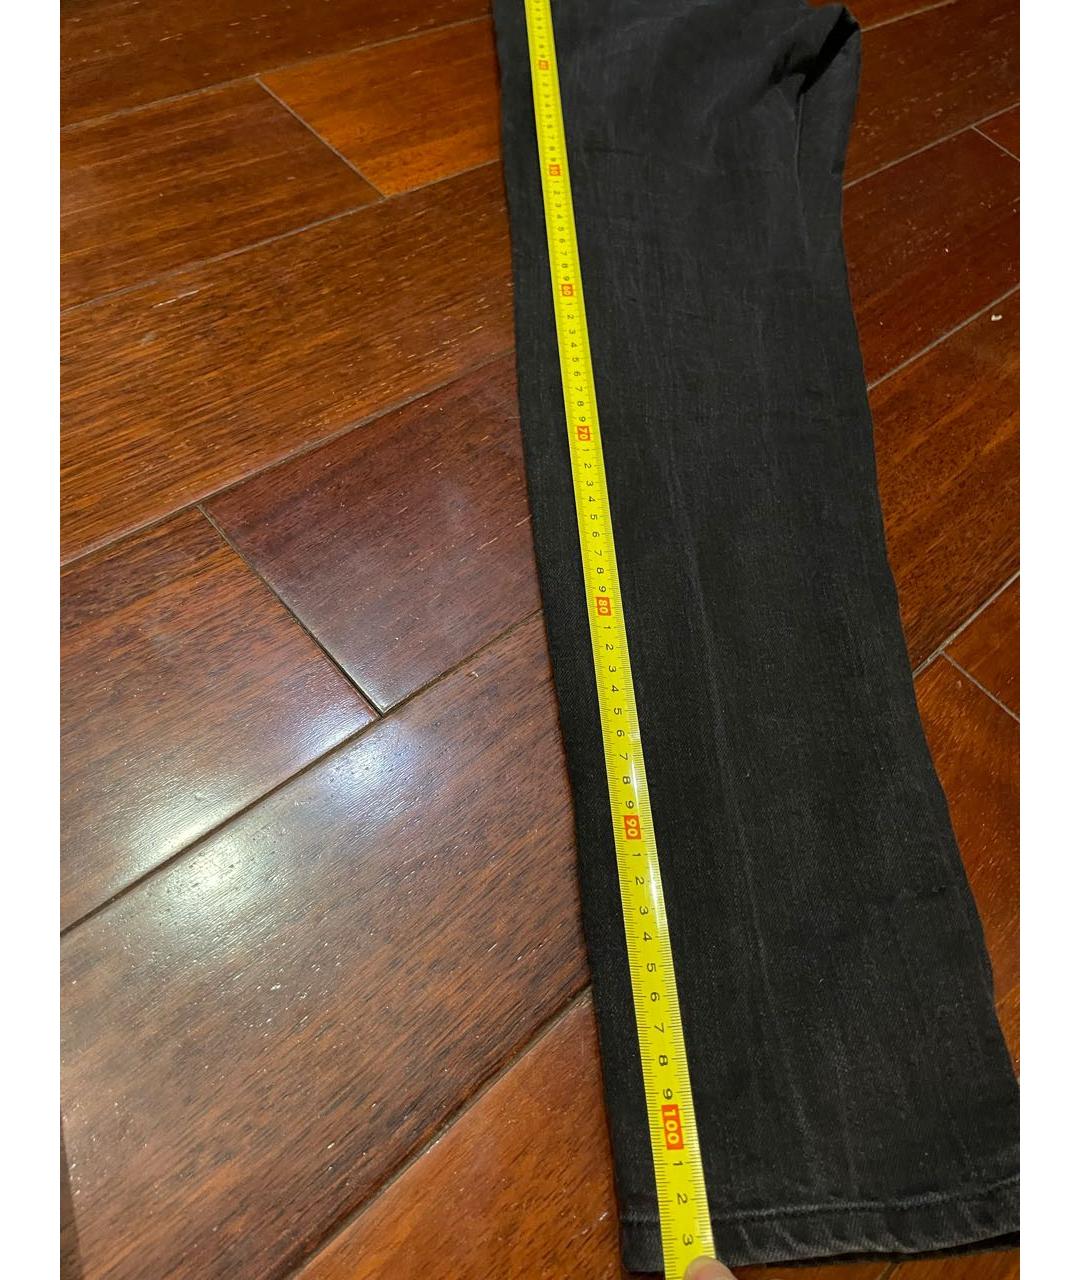 SAINT LAURENT Черные хлопко-эластановые прямые джинсы, фото 7